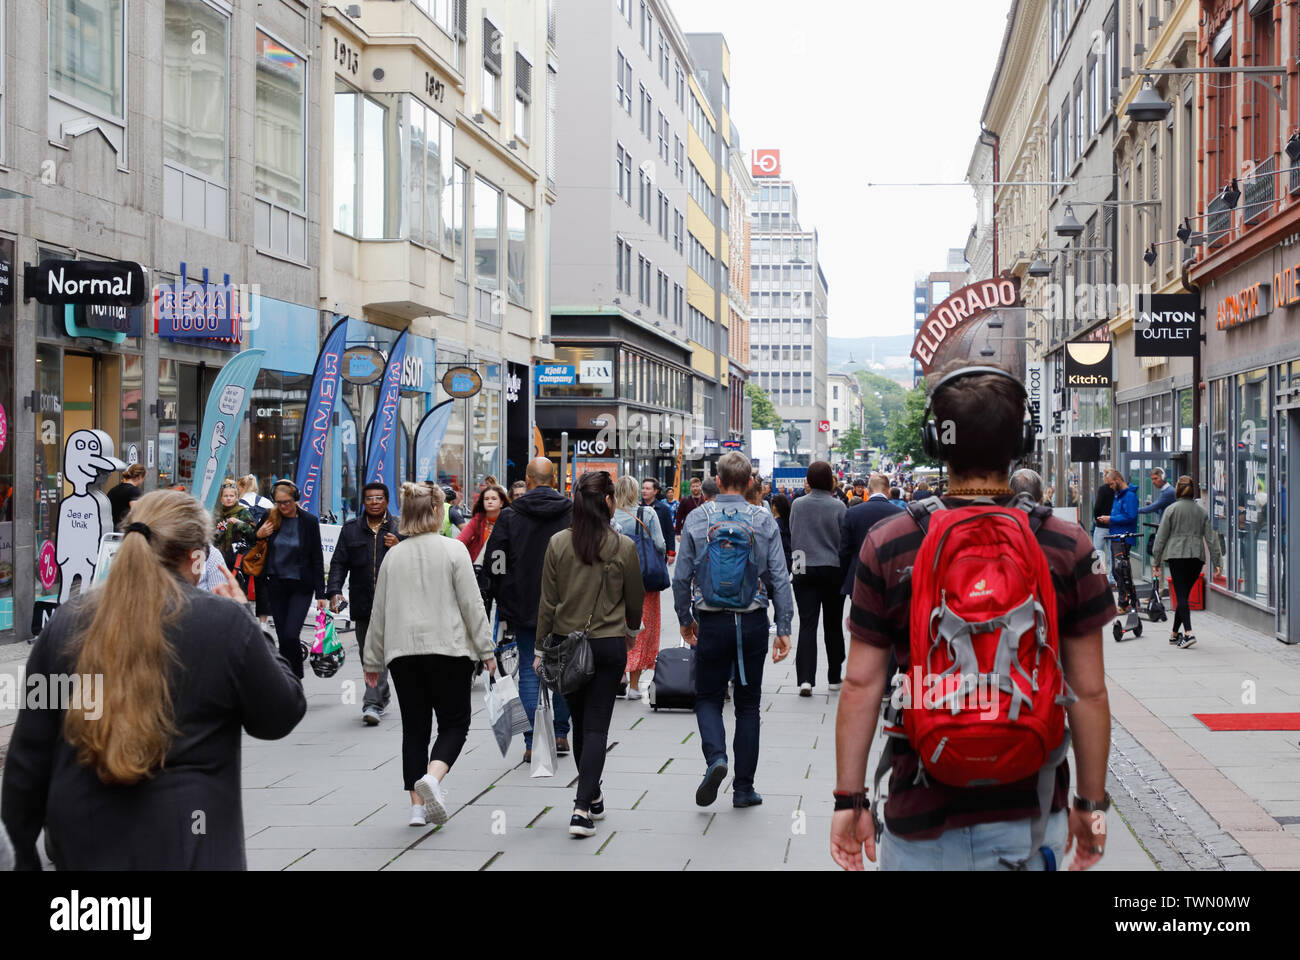 Oslo, Norvegia - 20 Giugno 2019: la gente che camminava sul Torggata strada pedonale nel quartiere downdtown. Foto Stock